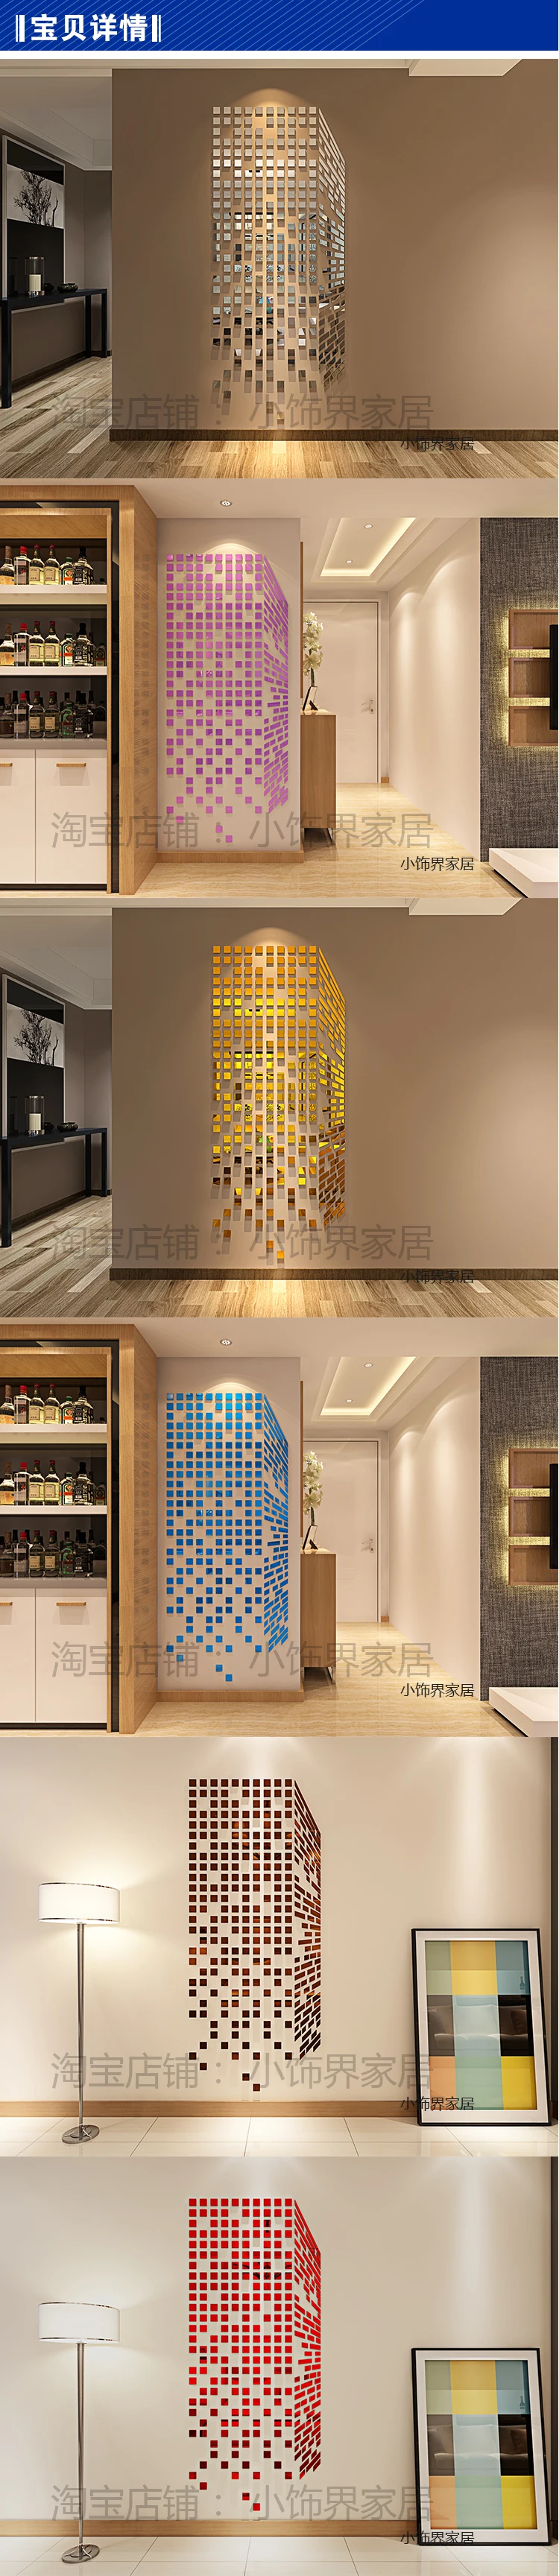 Кубик Рубика акриловые настенные наклейки мозаичные зеркальные настенные наклейки 3d трехмерные наклейки для стены в гостиной украшения-81